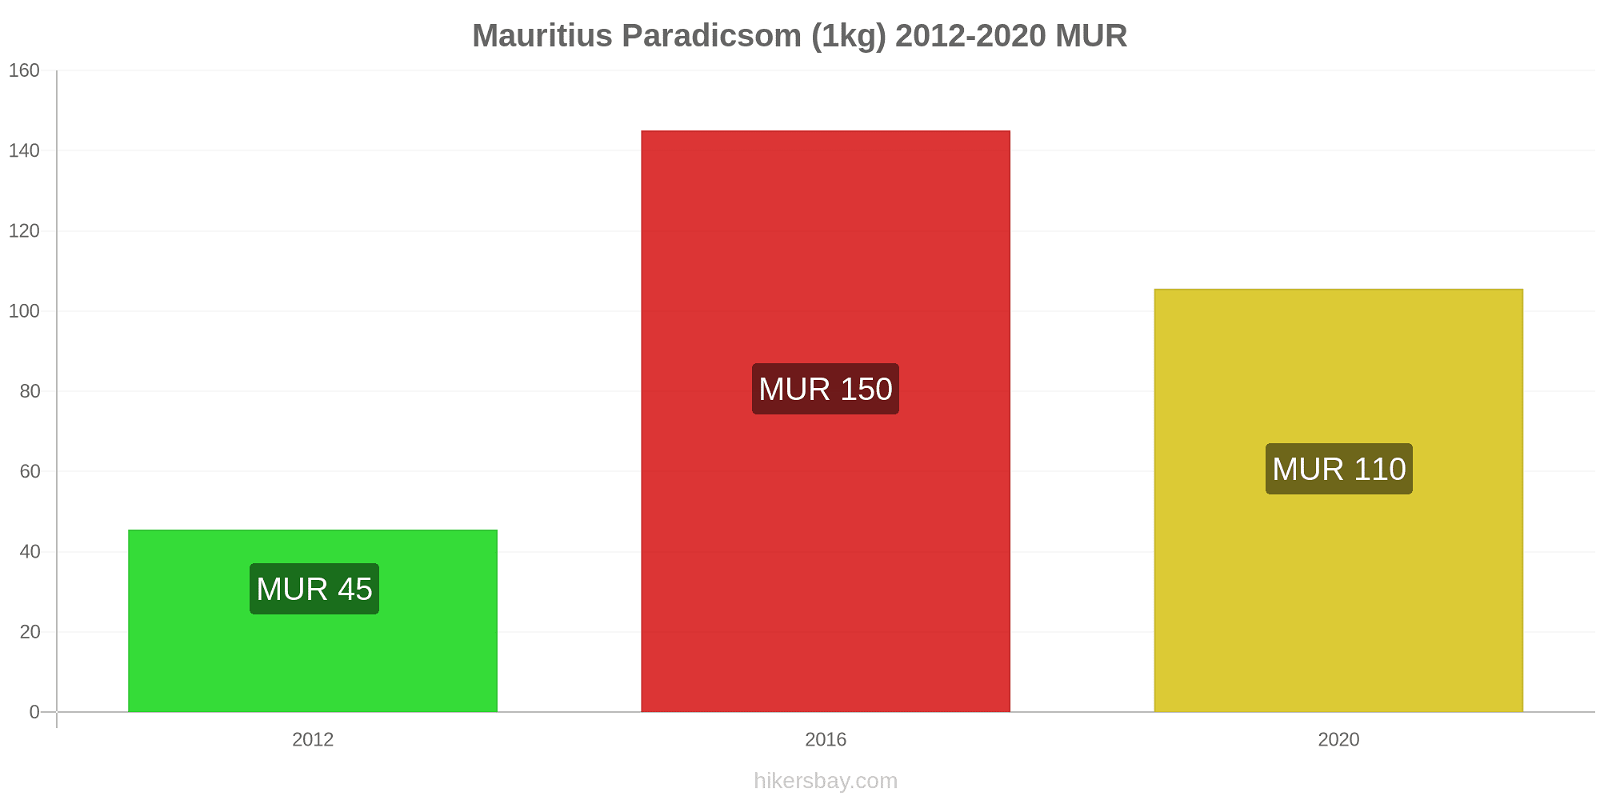 Mauritius árváltozások Paradicsom (1kg) hikersbay.com